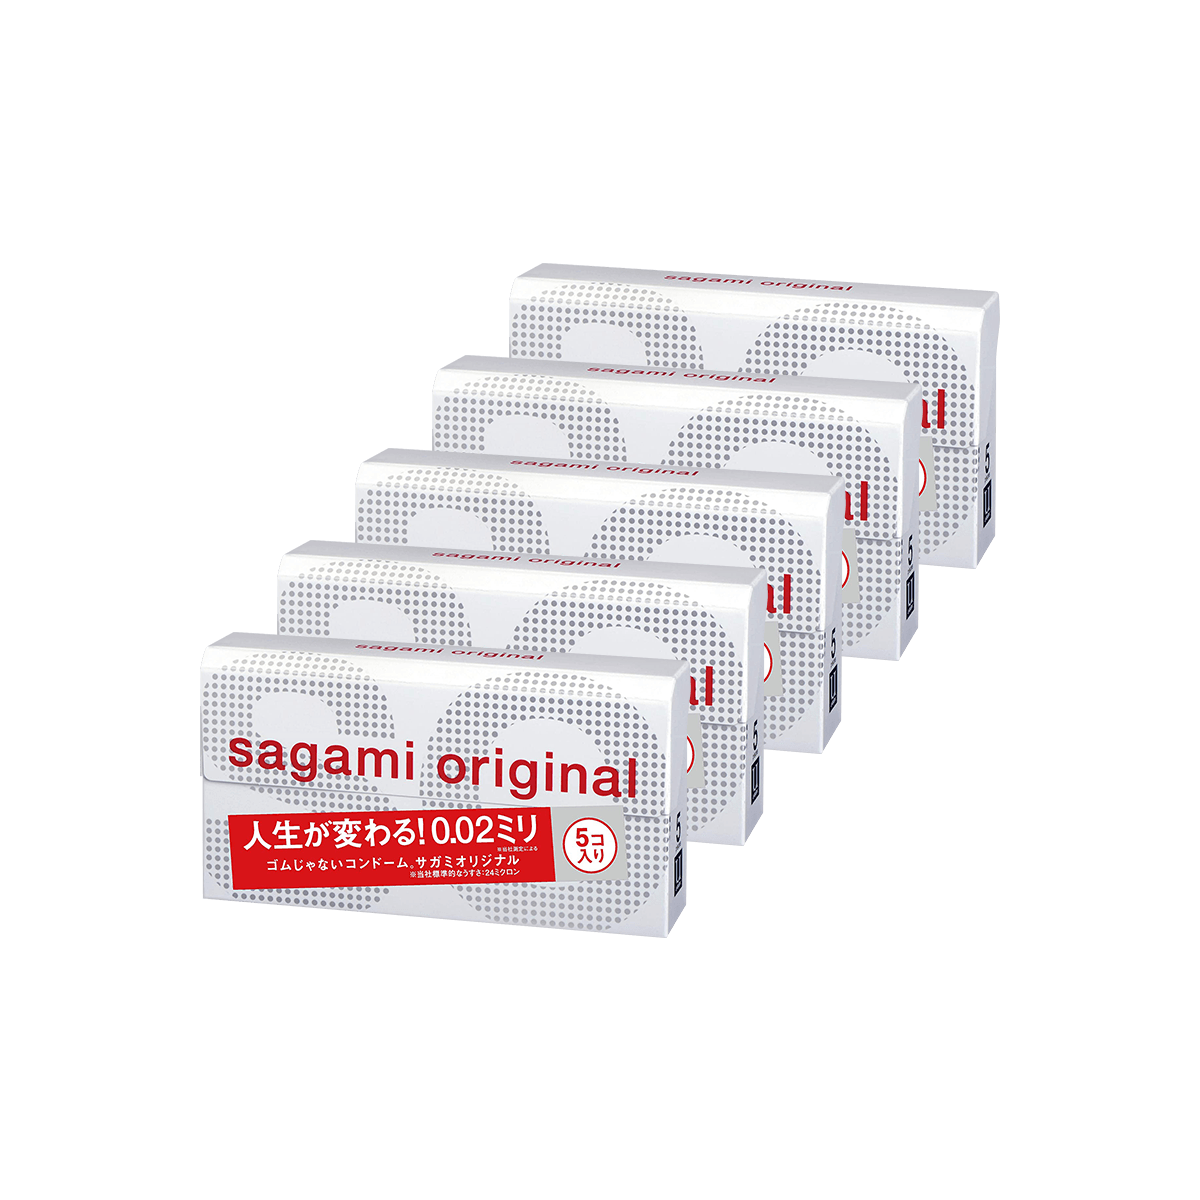 【五盒装】日本SAGAMI 幸福002 超薄安全避孕套 5片入*5 怎么样 - 亚米网